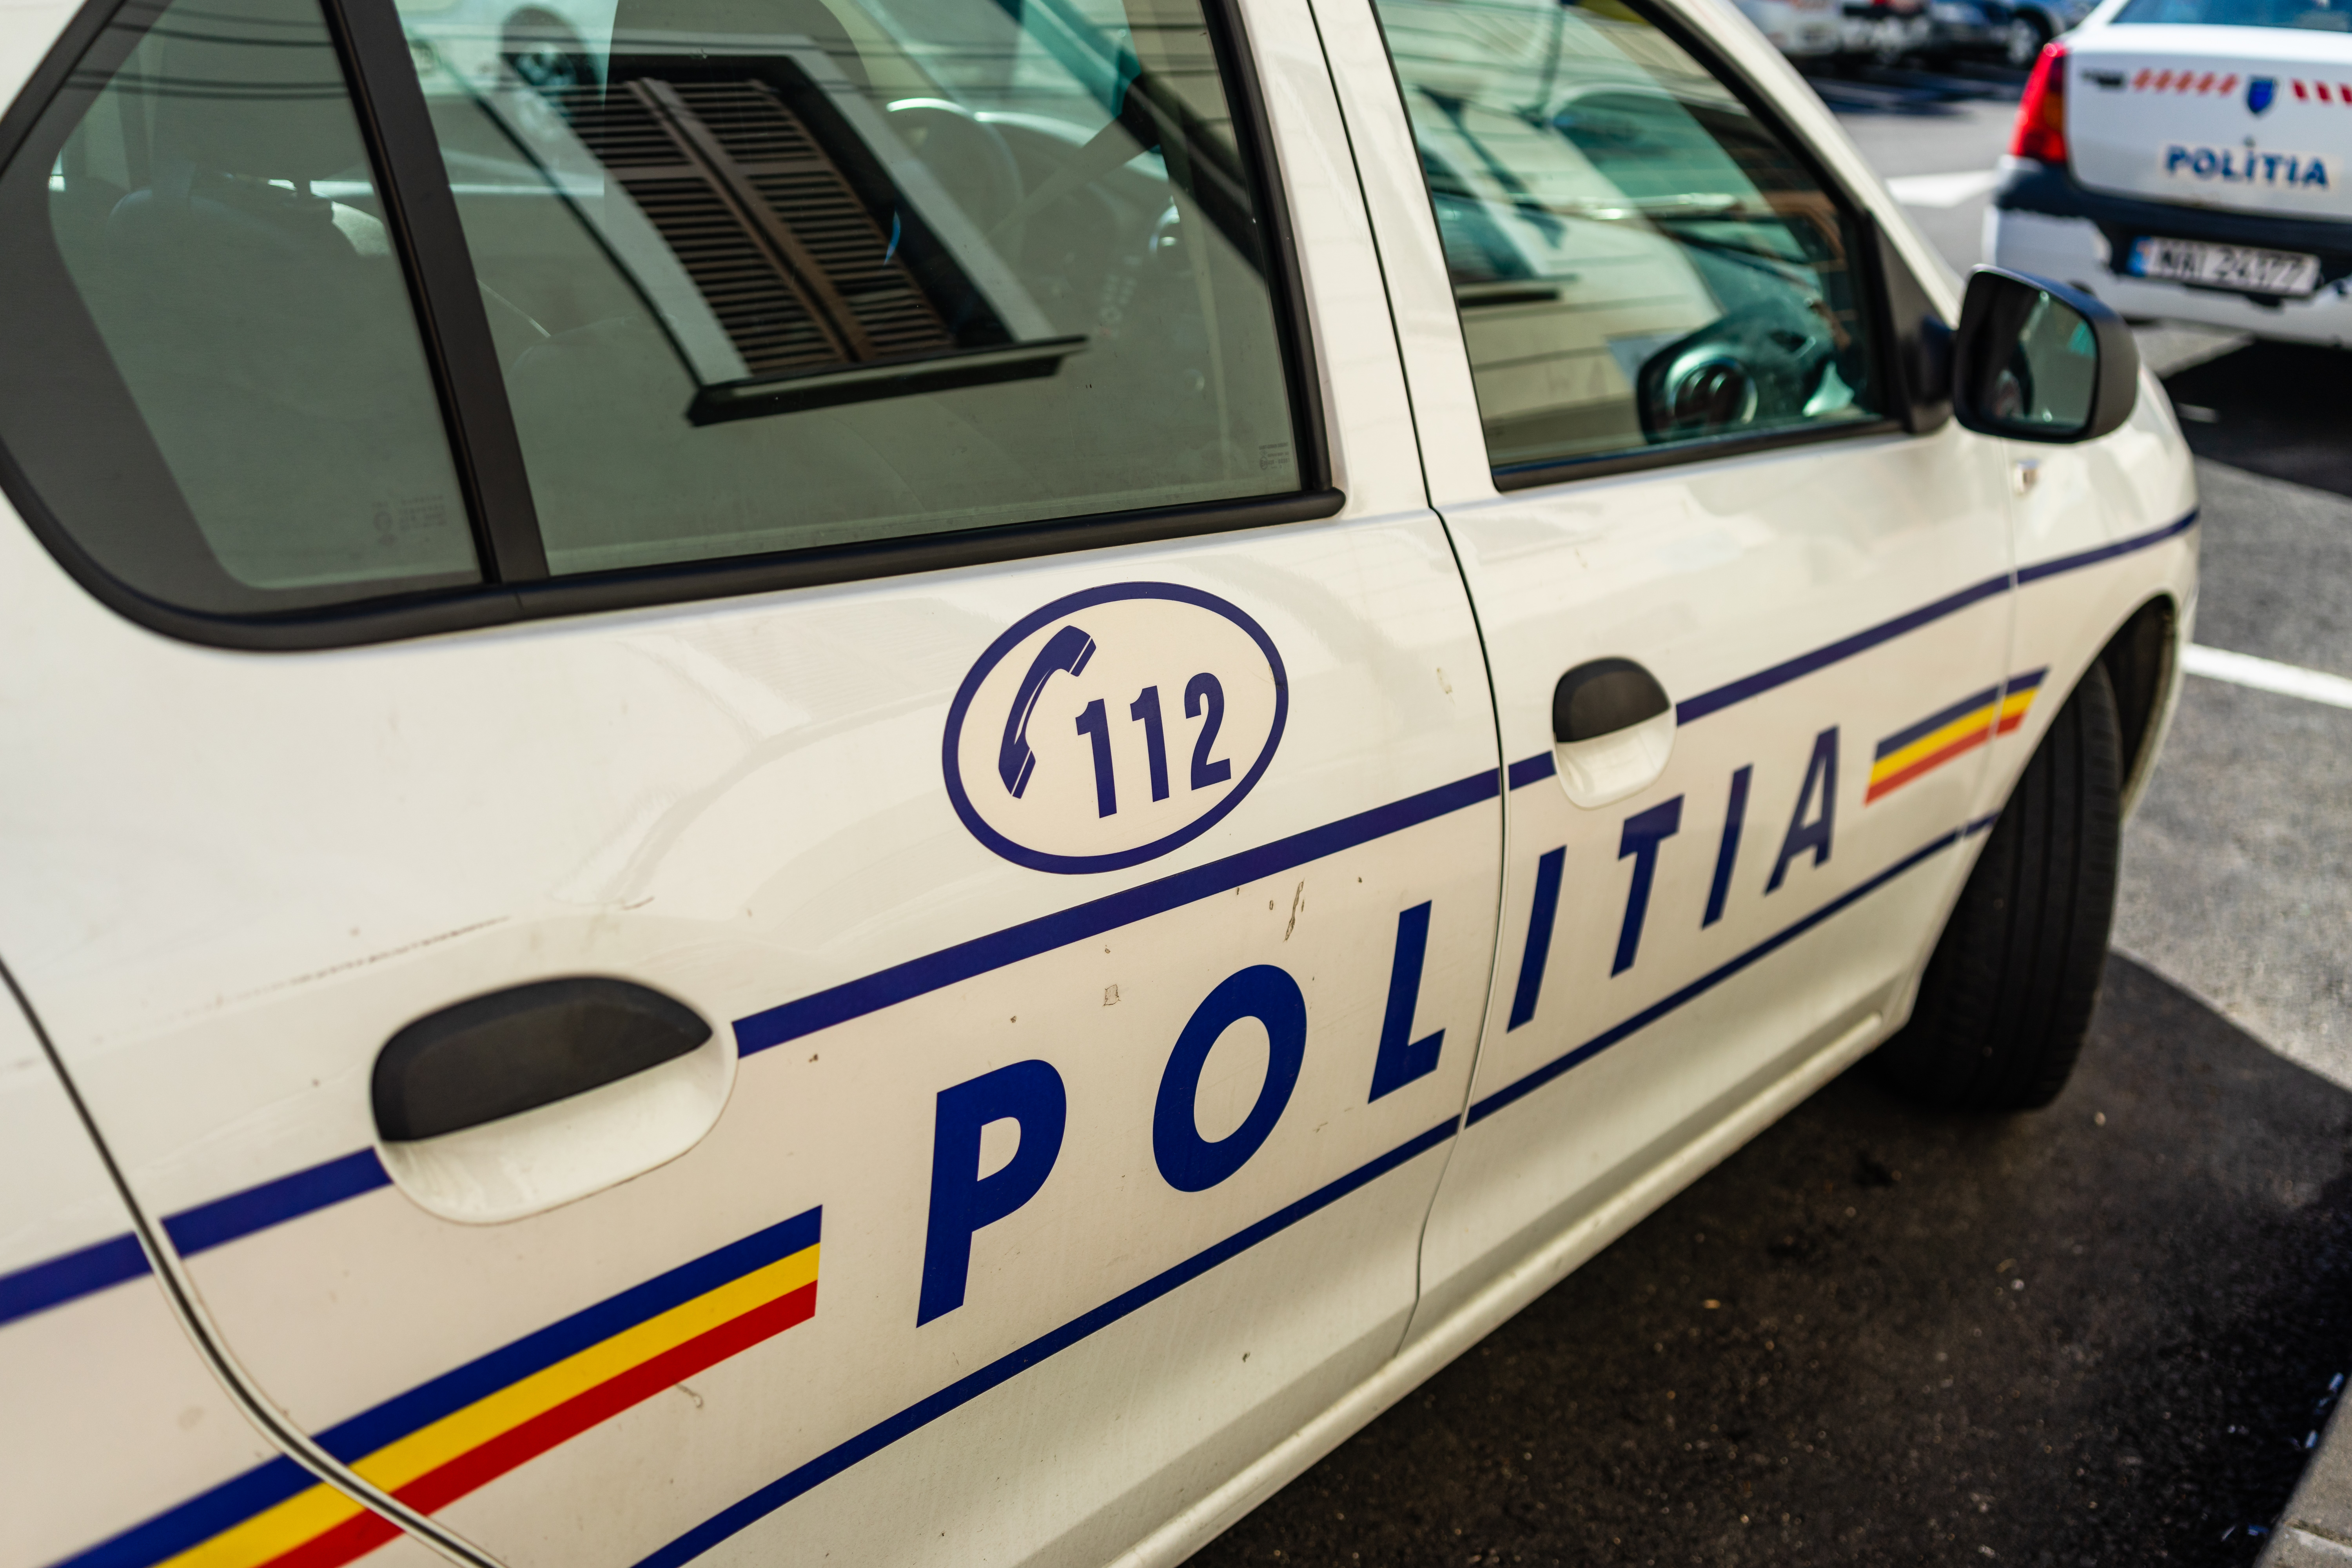 Doi adolescenţi care au furat o maşină, prinşi de poliţişti, după o urmărire de aproximativ 40 de kilometri